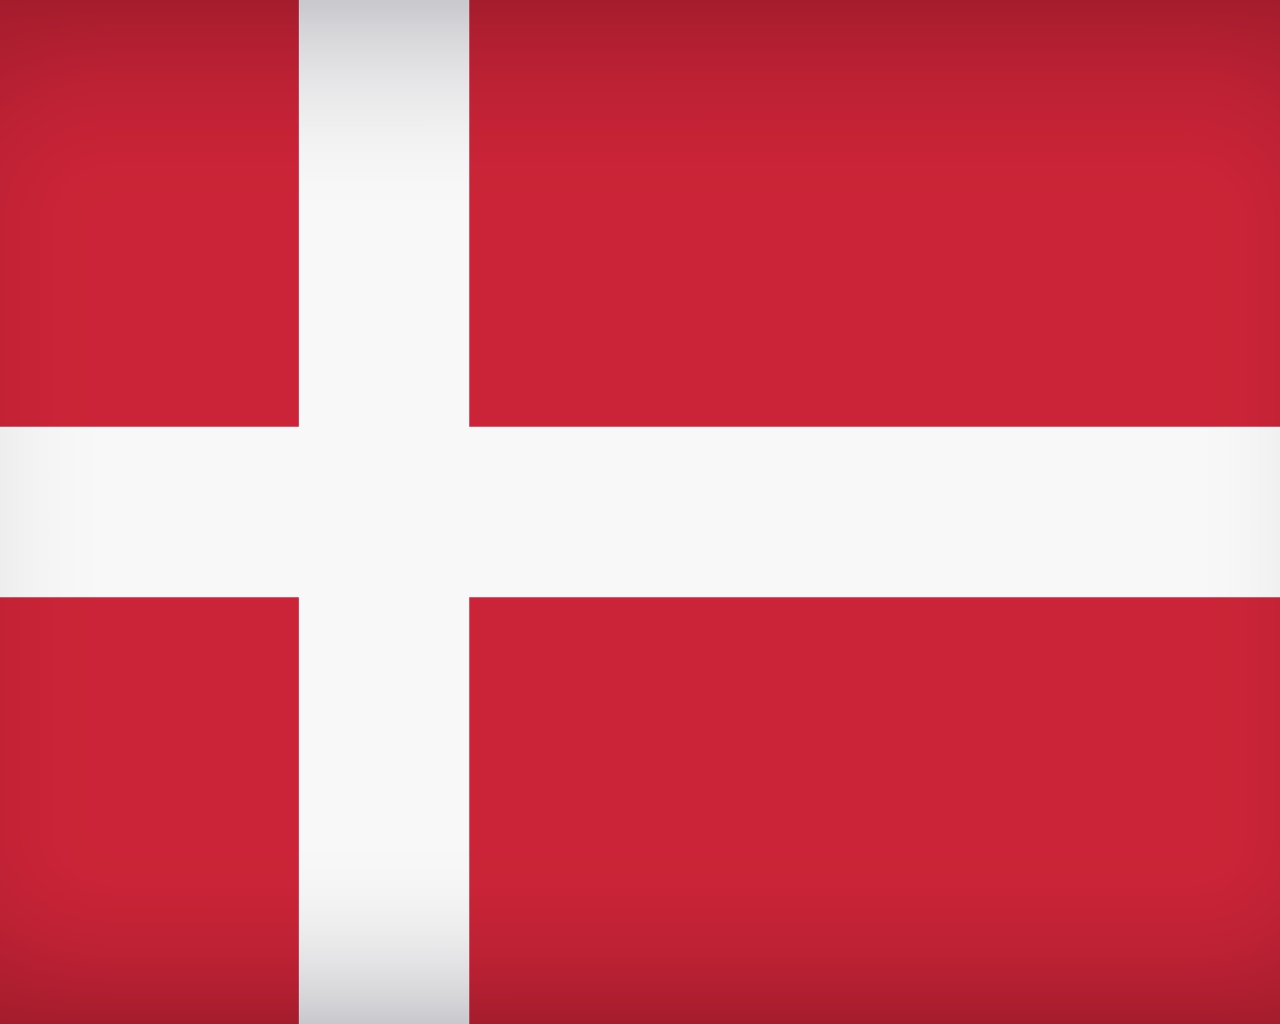 Red - white flag of Denmark